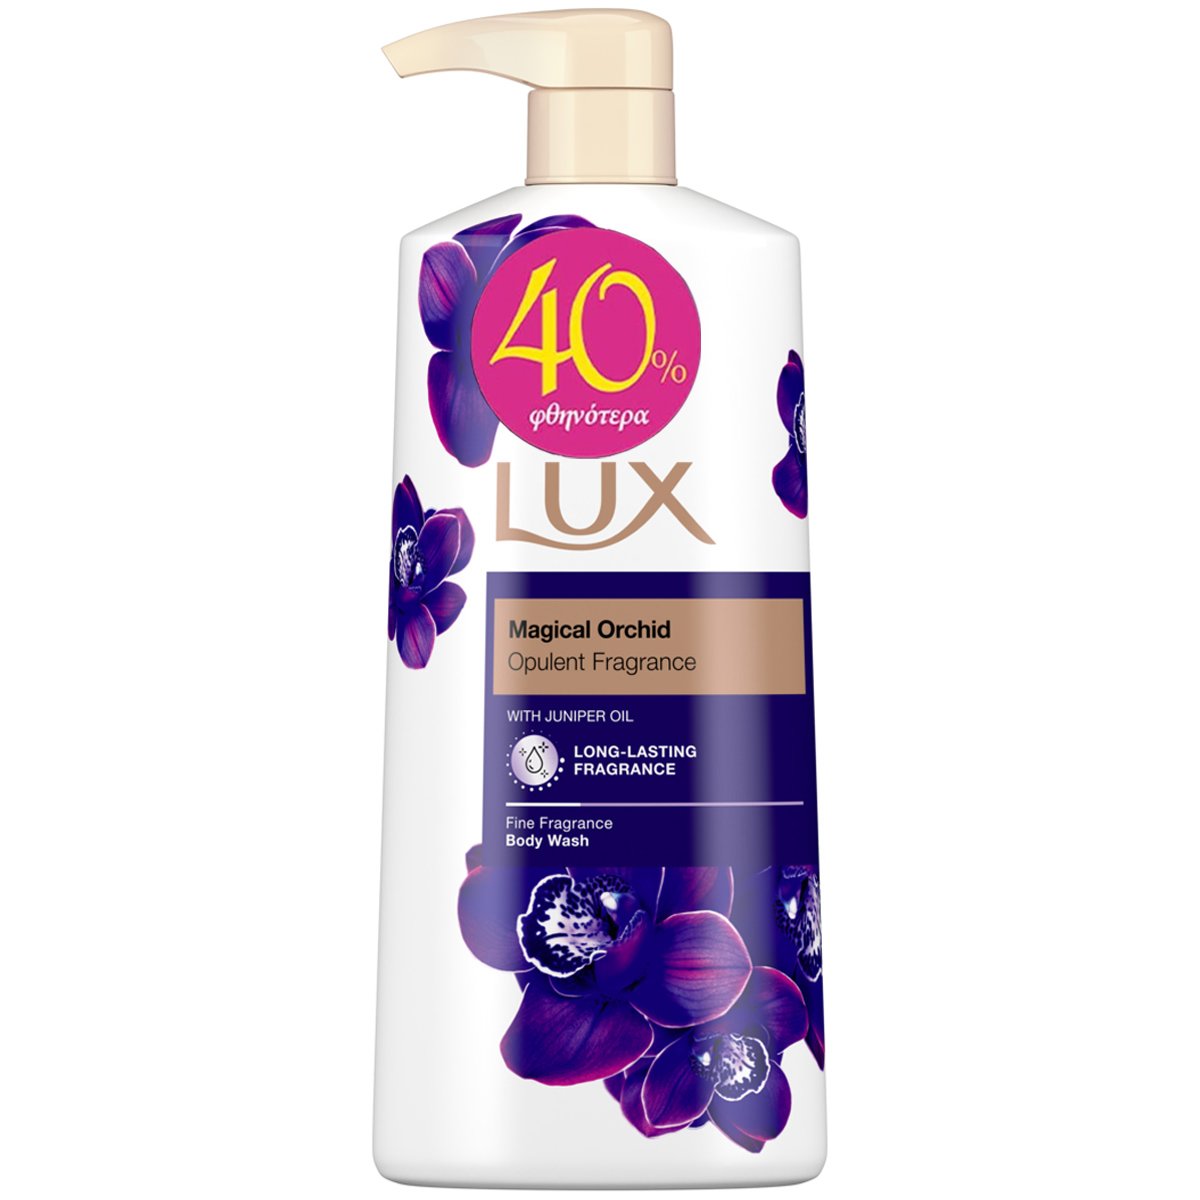 Lux Magical Orchid Body Wash Αφρόλουτρο με Γοητευτικό Άρωμα από Άνθη Εξωτικών Λουλουδιών 600ml Promo -40%